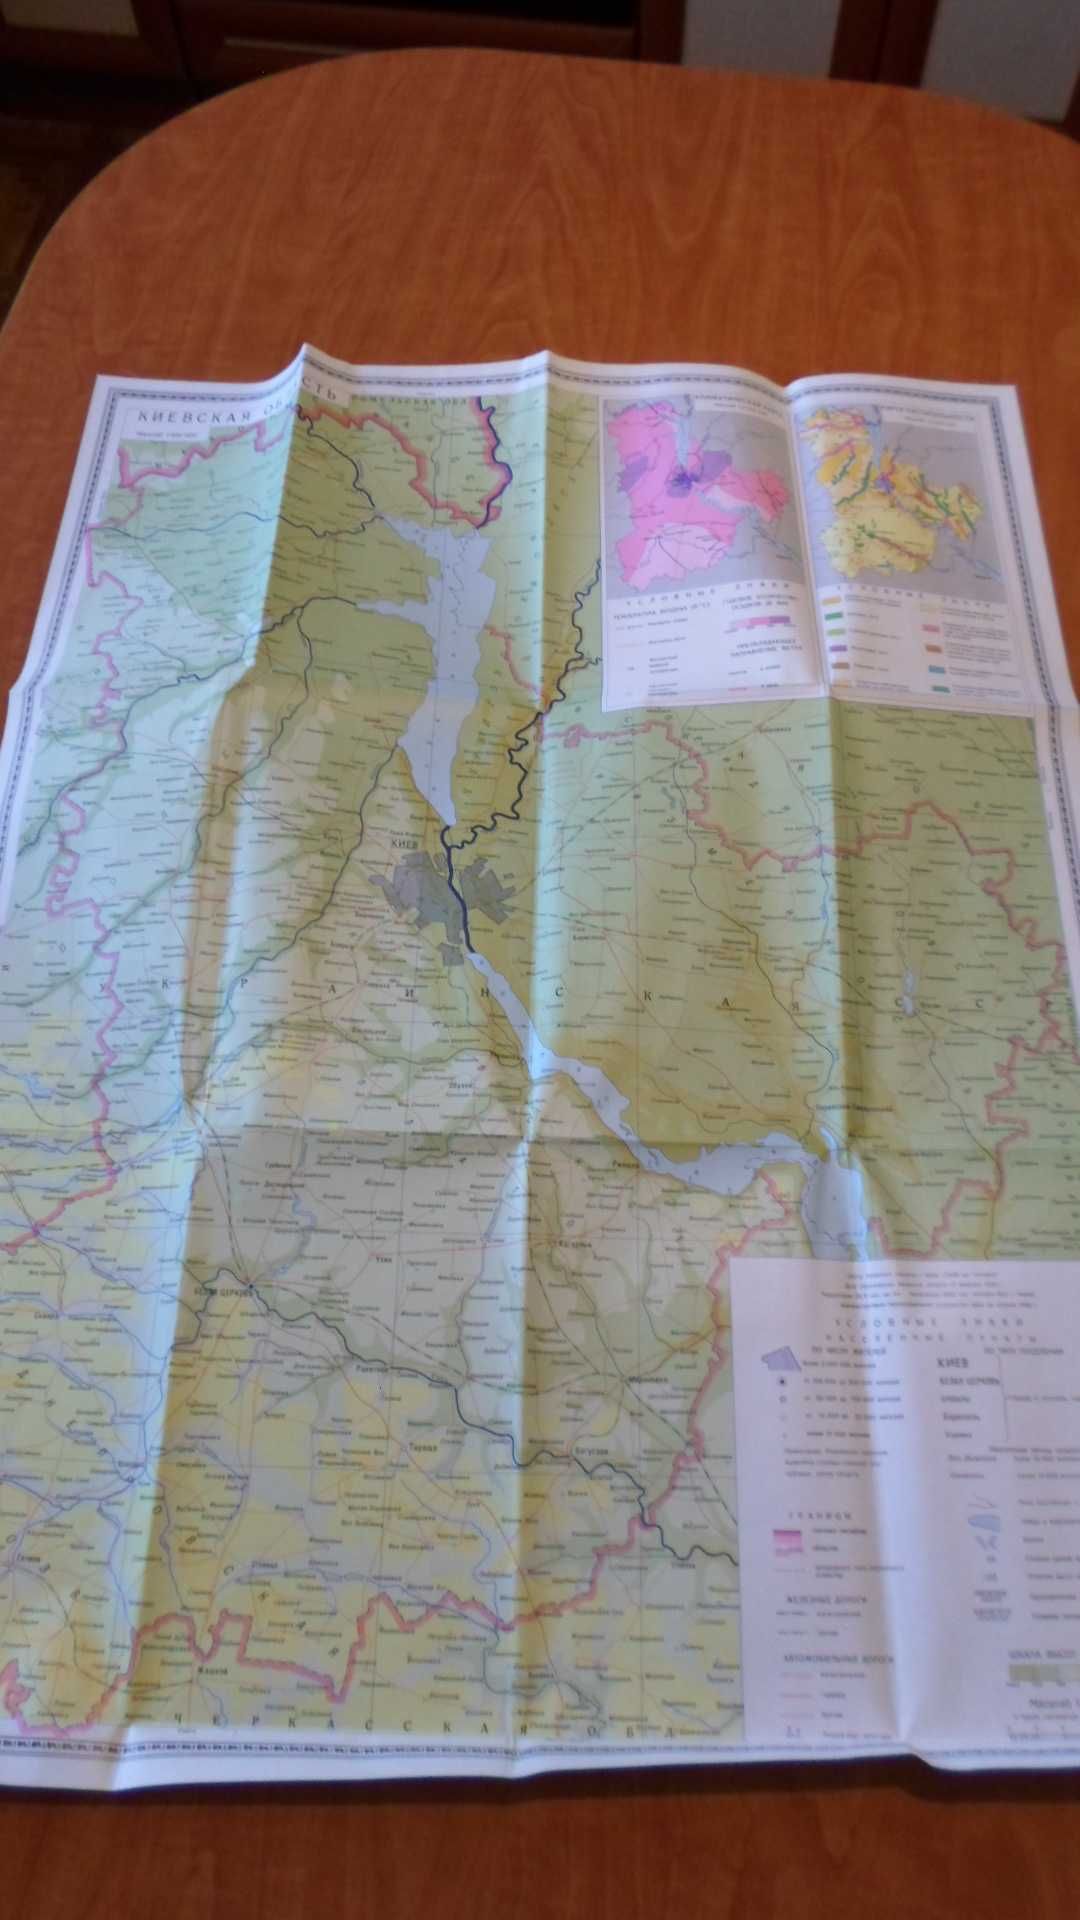 Киевская область - справочная общегеографическая карта 1986 г